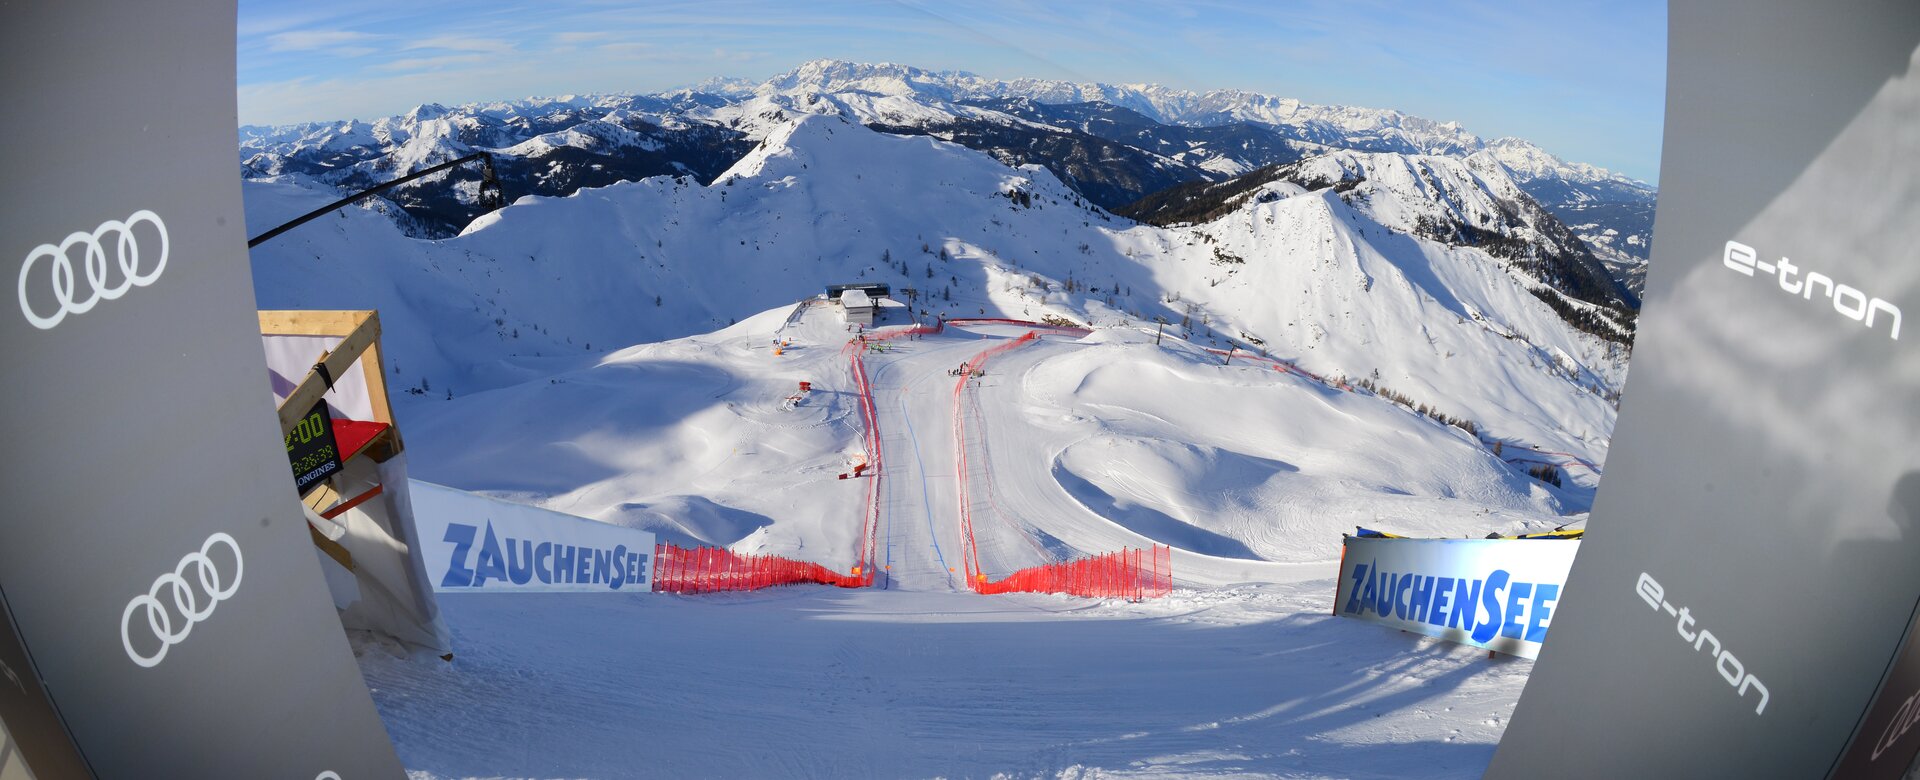 Blickaus dem Starthaus der Skiweltcup Damen Abfahrt welche steil in die verschneite Winterlandschaft verläuft